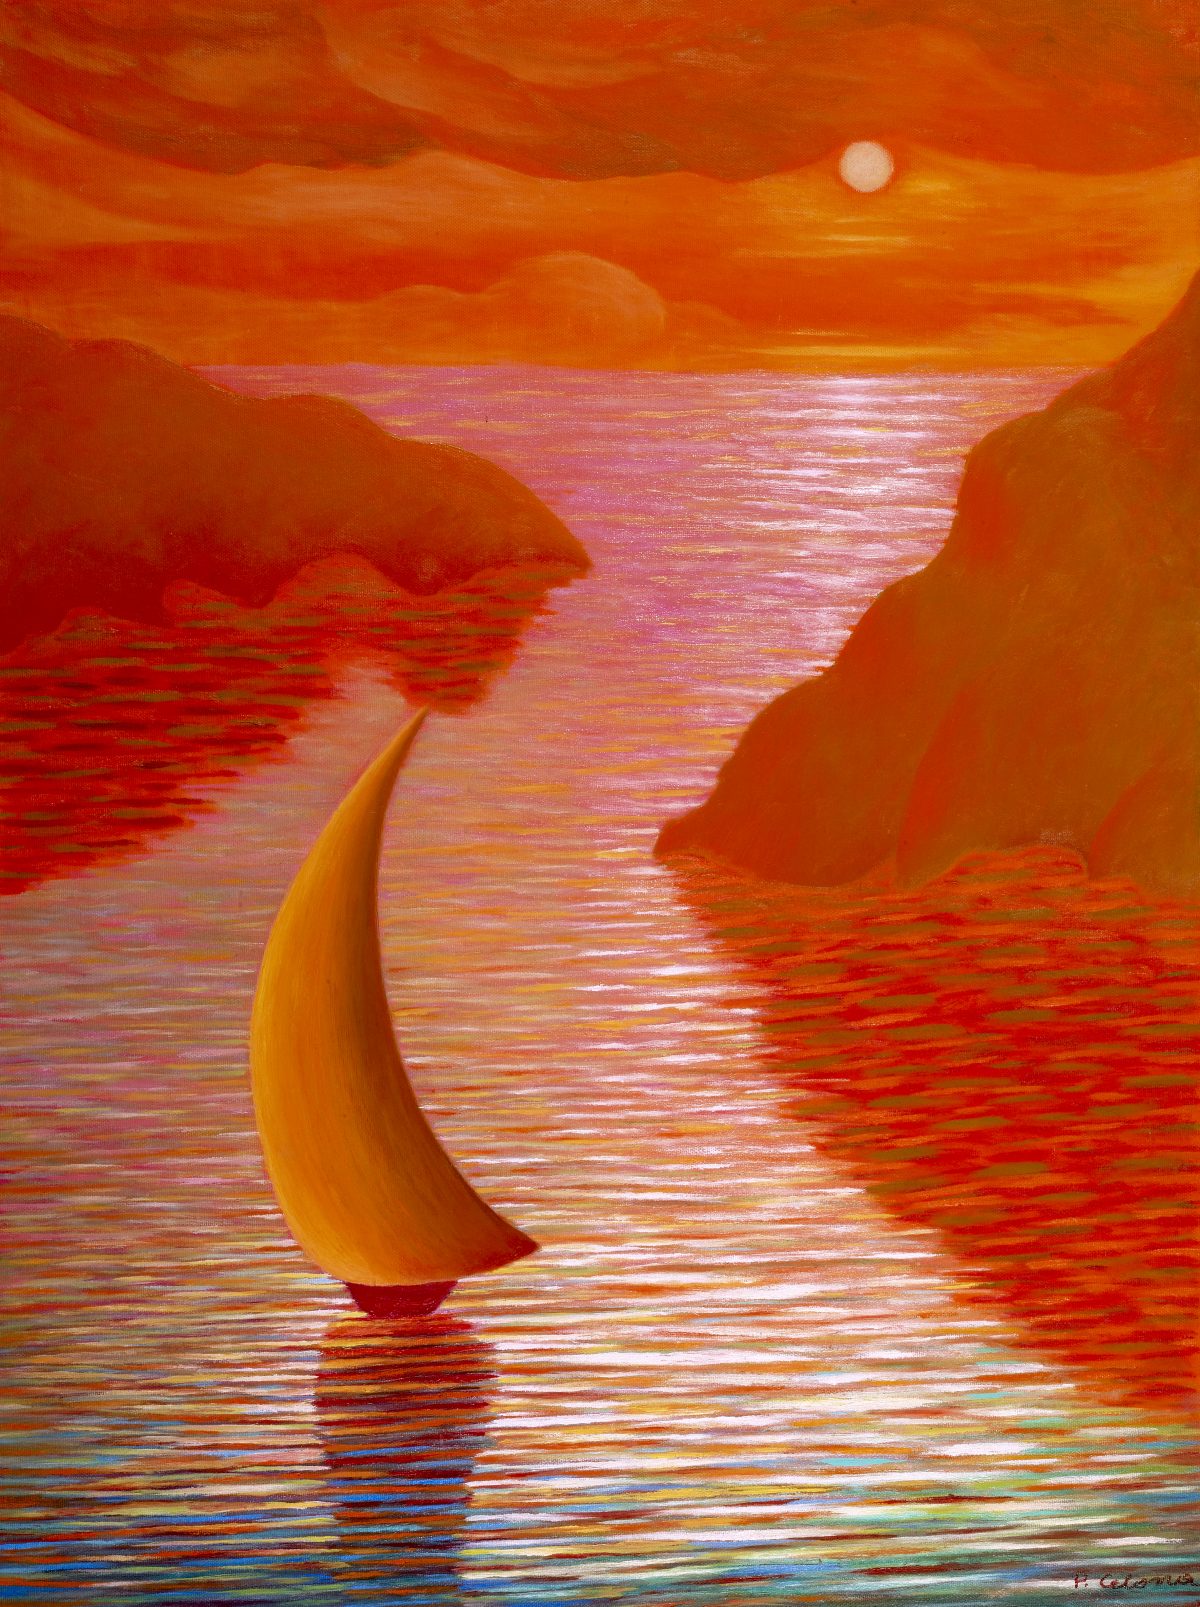 Vela al tramonto, ca. 1997
Olio su tela
50 x 40 cm,
VV014